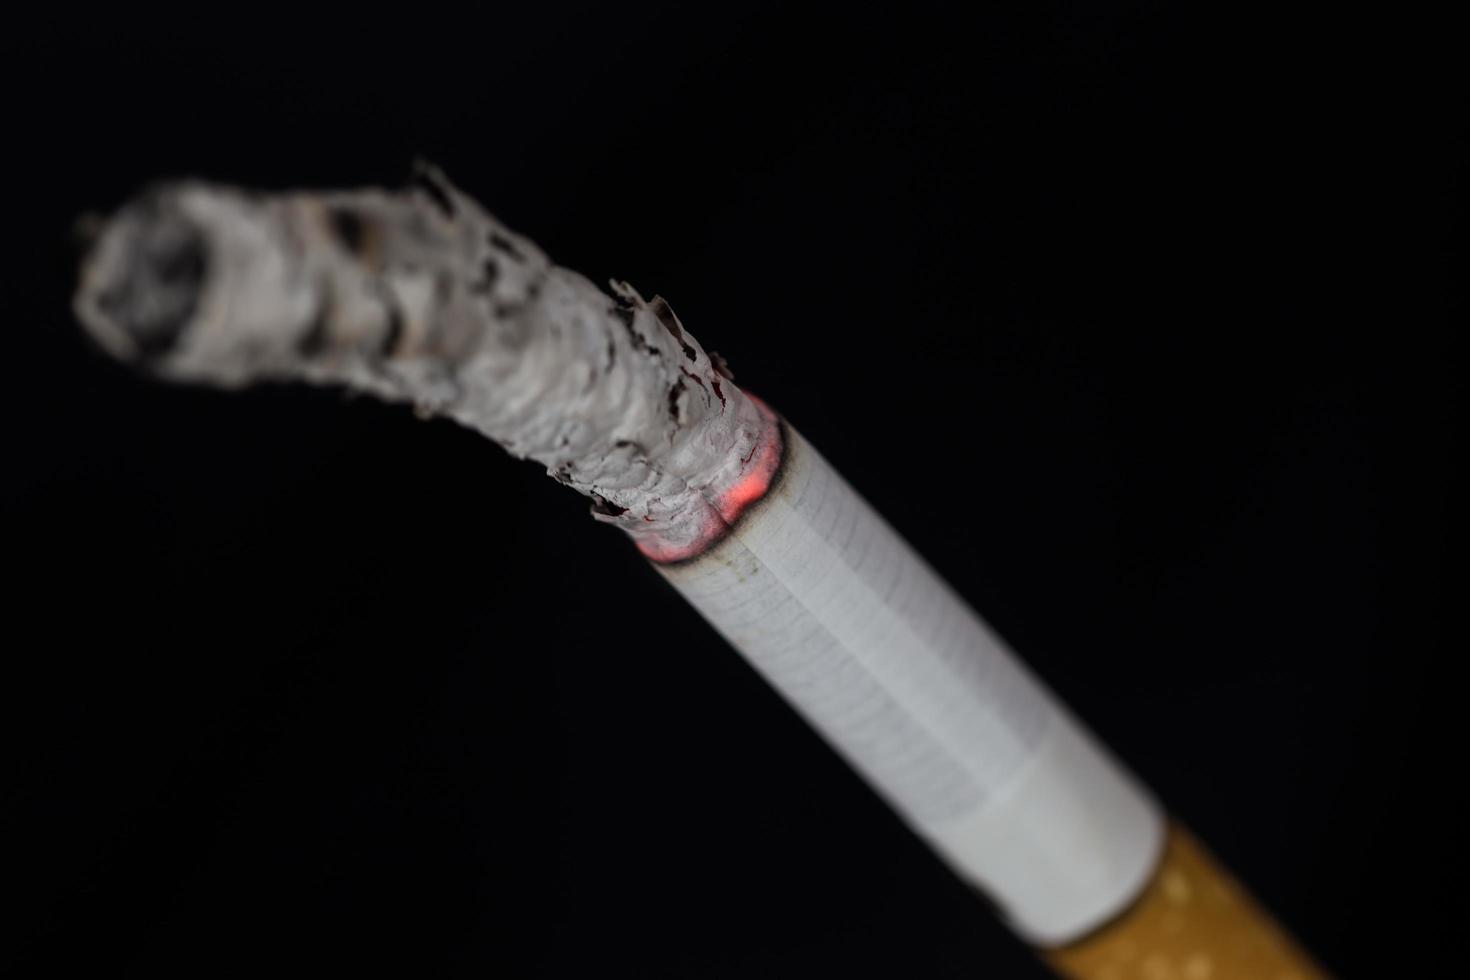 cigarro aceso com fumaça em fundo preto foto